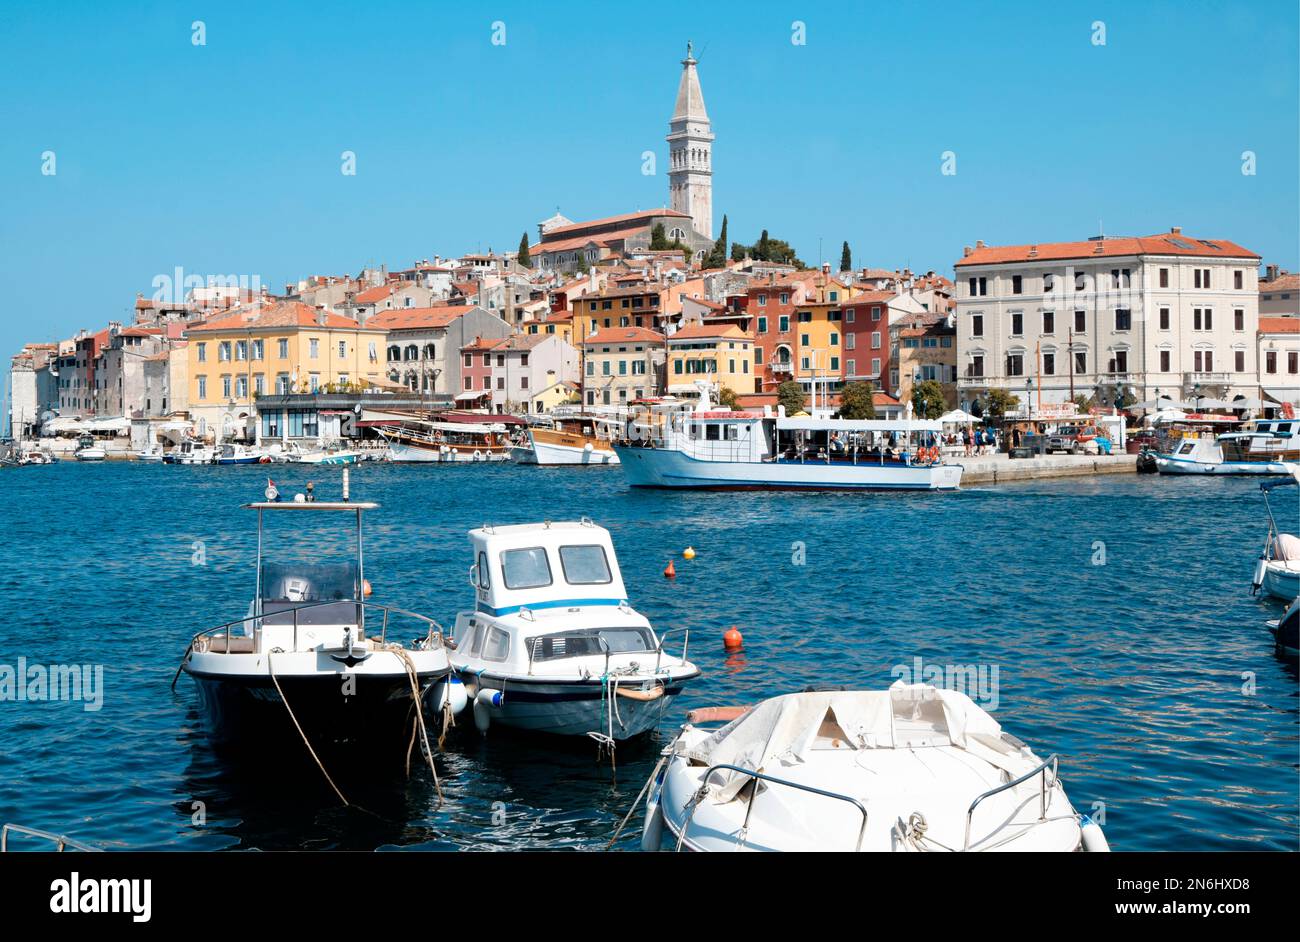 Blick auf die Altstadt von Rovinj, Istrien, Kroatien. Adriatisches Meer, Rovinj. Altstadt von Rovinj und die Kathedrale von St. Euphämie Stockfoto